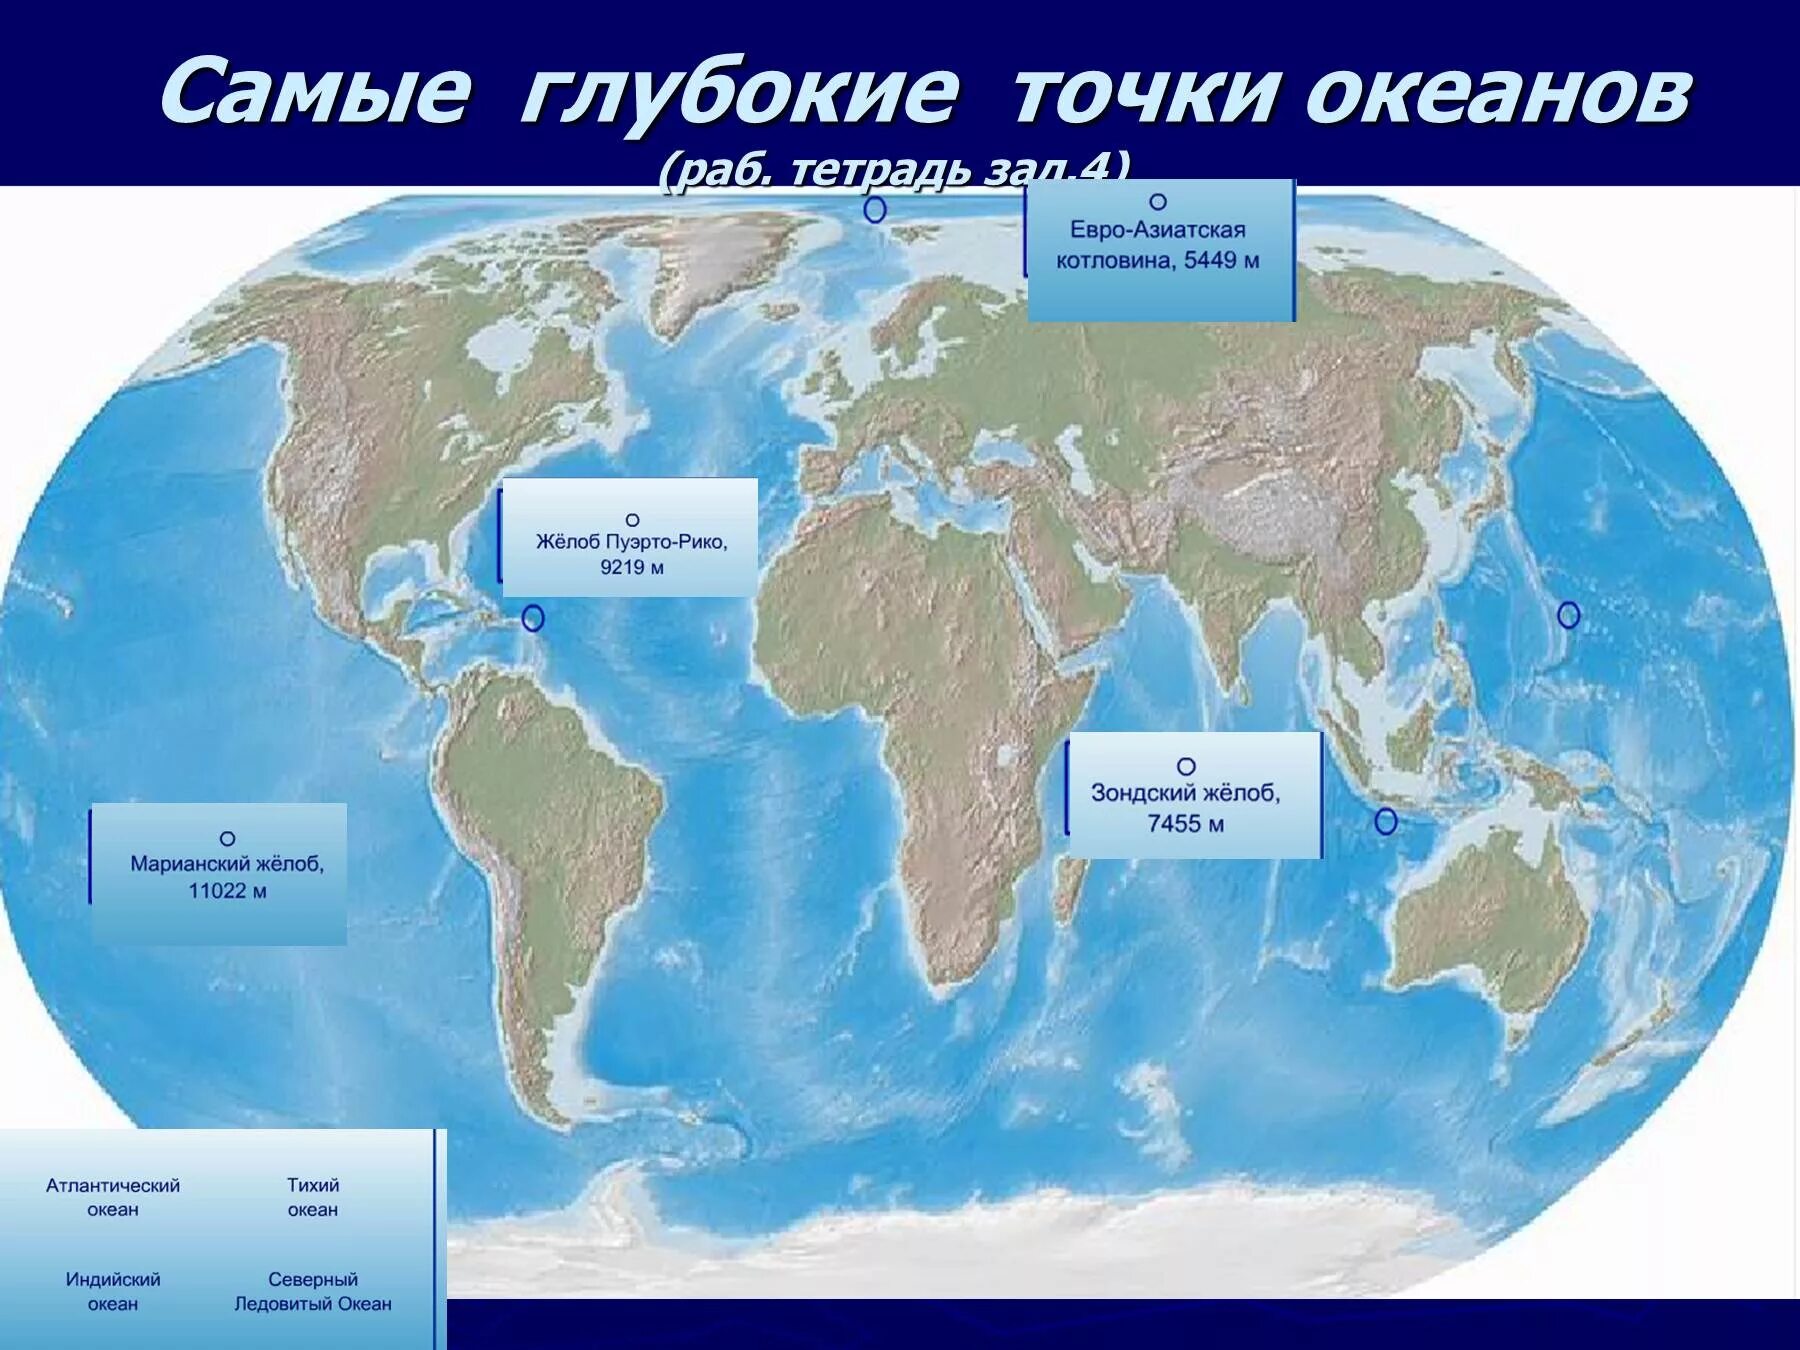 Материки и впадины океана. Самые глубокие точки океанов. Самые глубокие точки океанов на карте. Самая глубокая точка мирового океана на карте. Самая глубокая точка океана на карте.